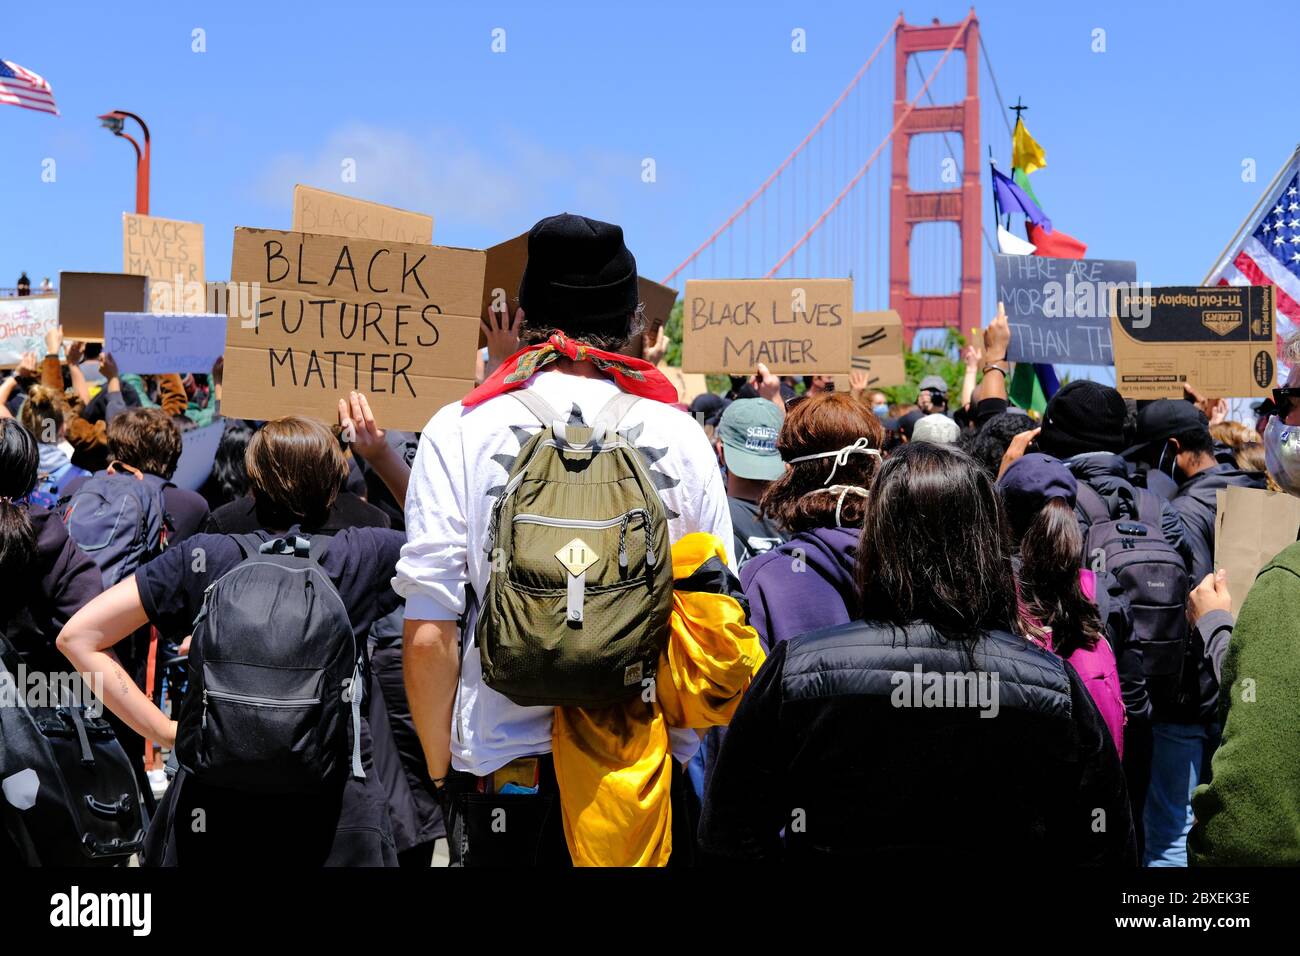 Black Lives Matter march à travers le Golden Gate Bridge à San Francisco, Californie le 6 2020 juin pour protester contre la mort de George Floyd: Black futures. Banque D'Images